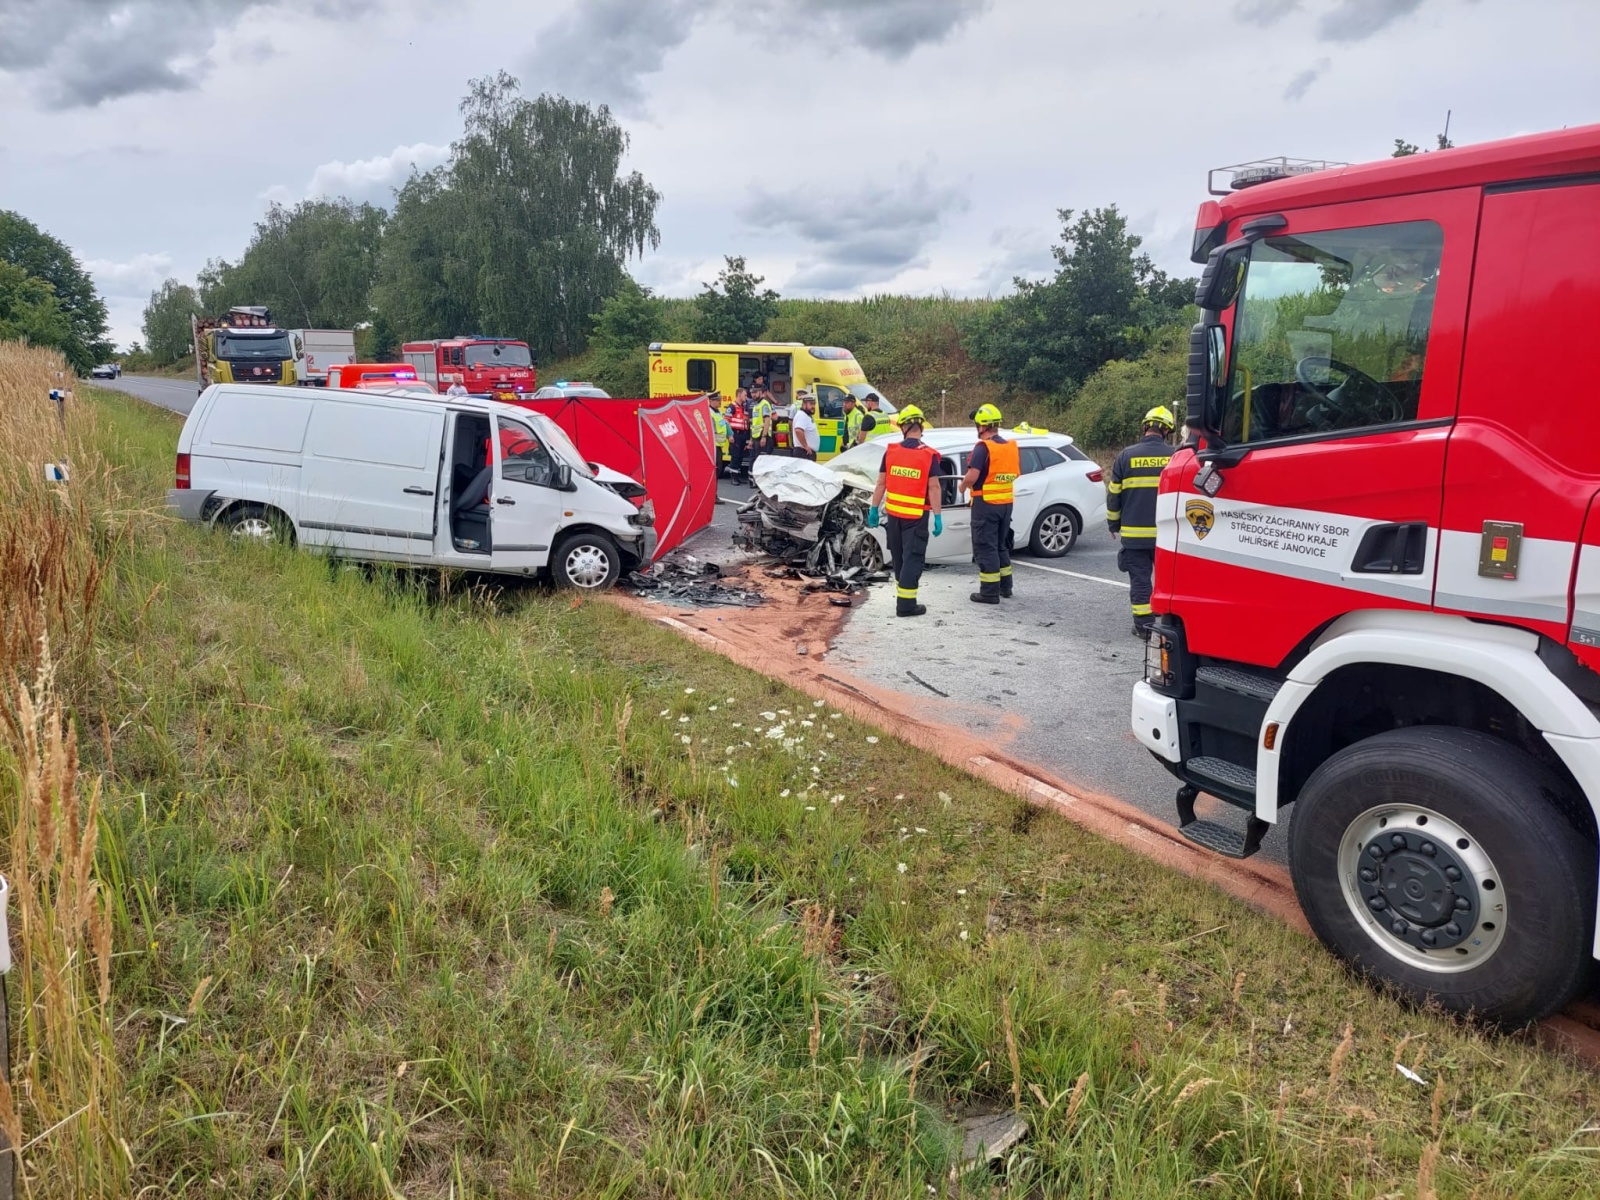 007-Tragická nehoda dvou vozidel poblíž Kácova na Kutnohorsk.jpeg